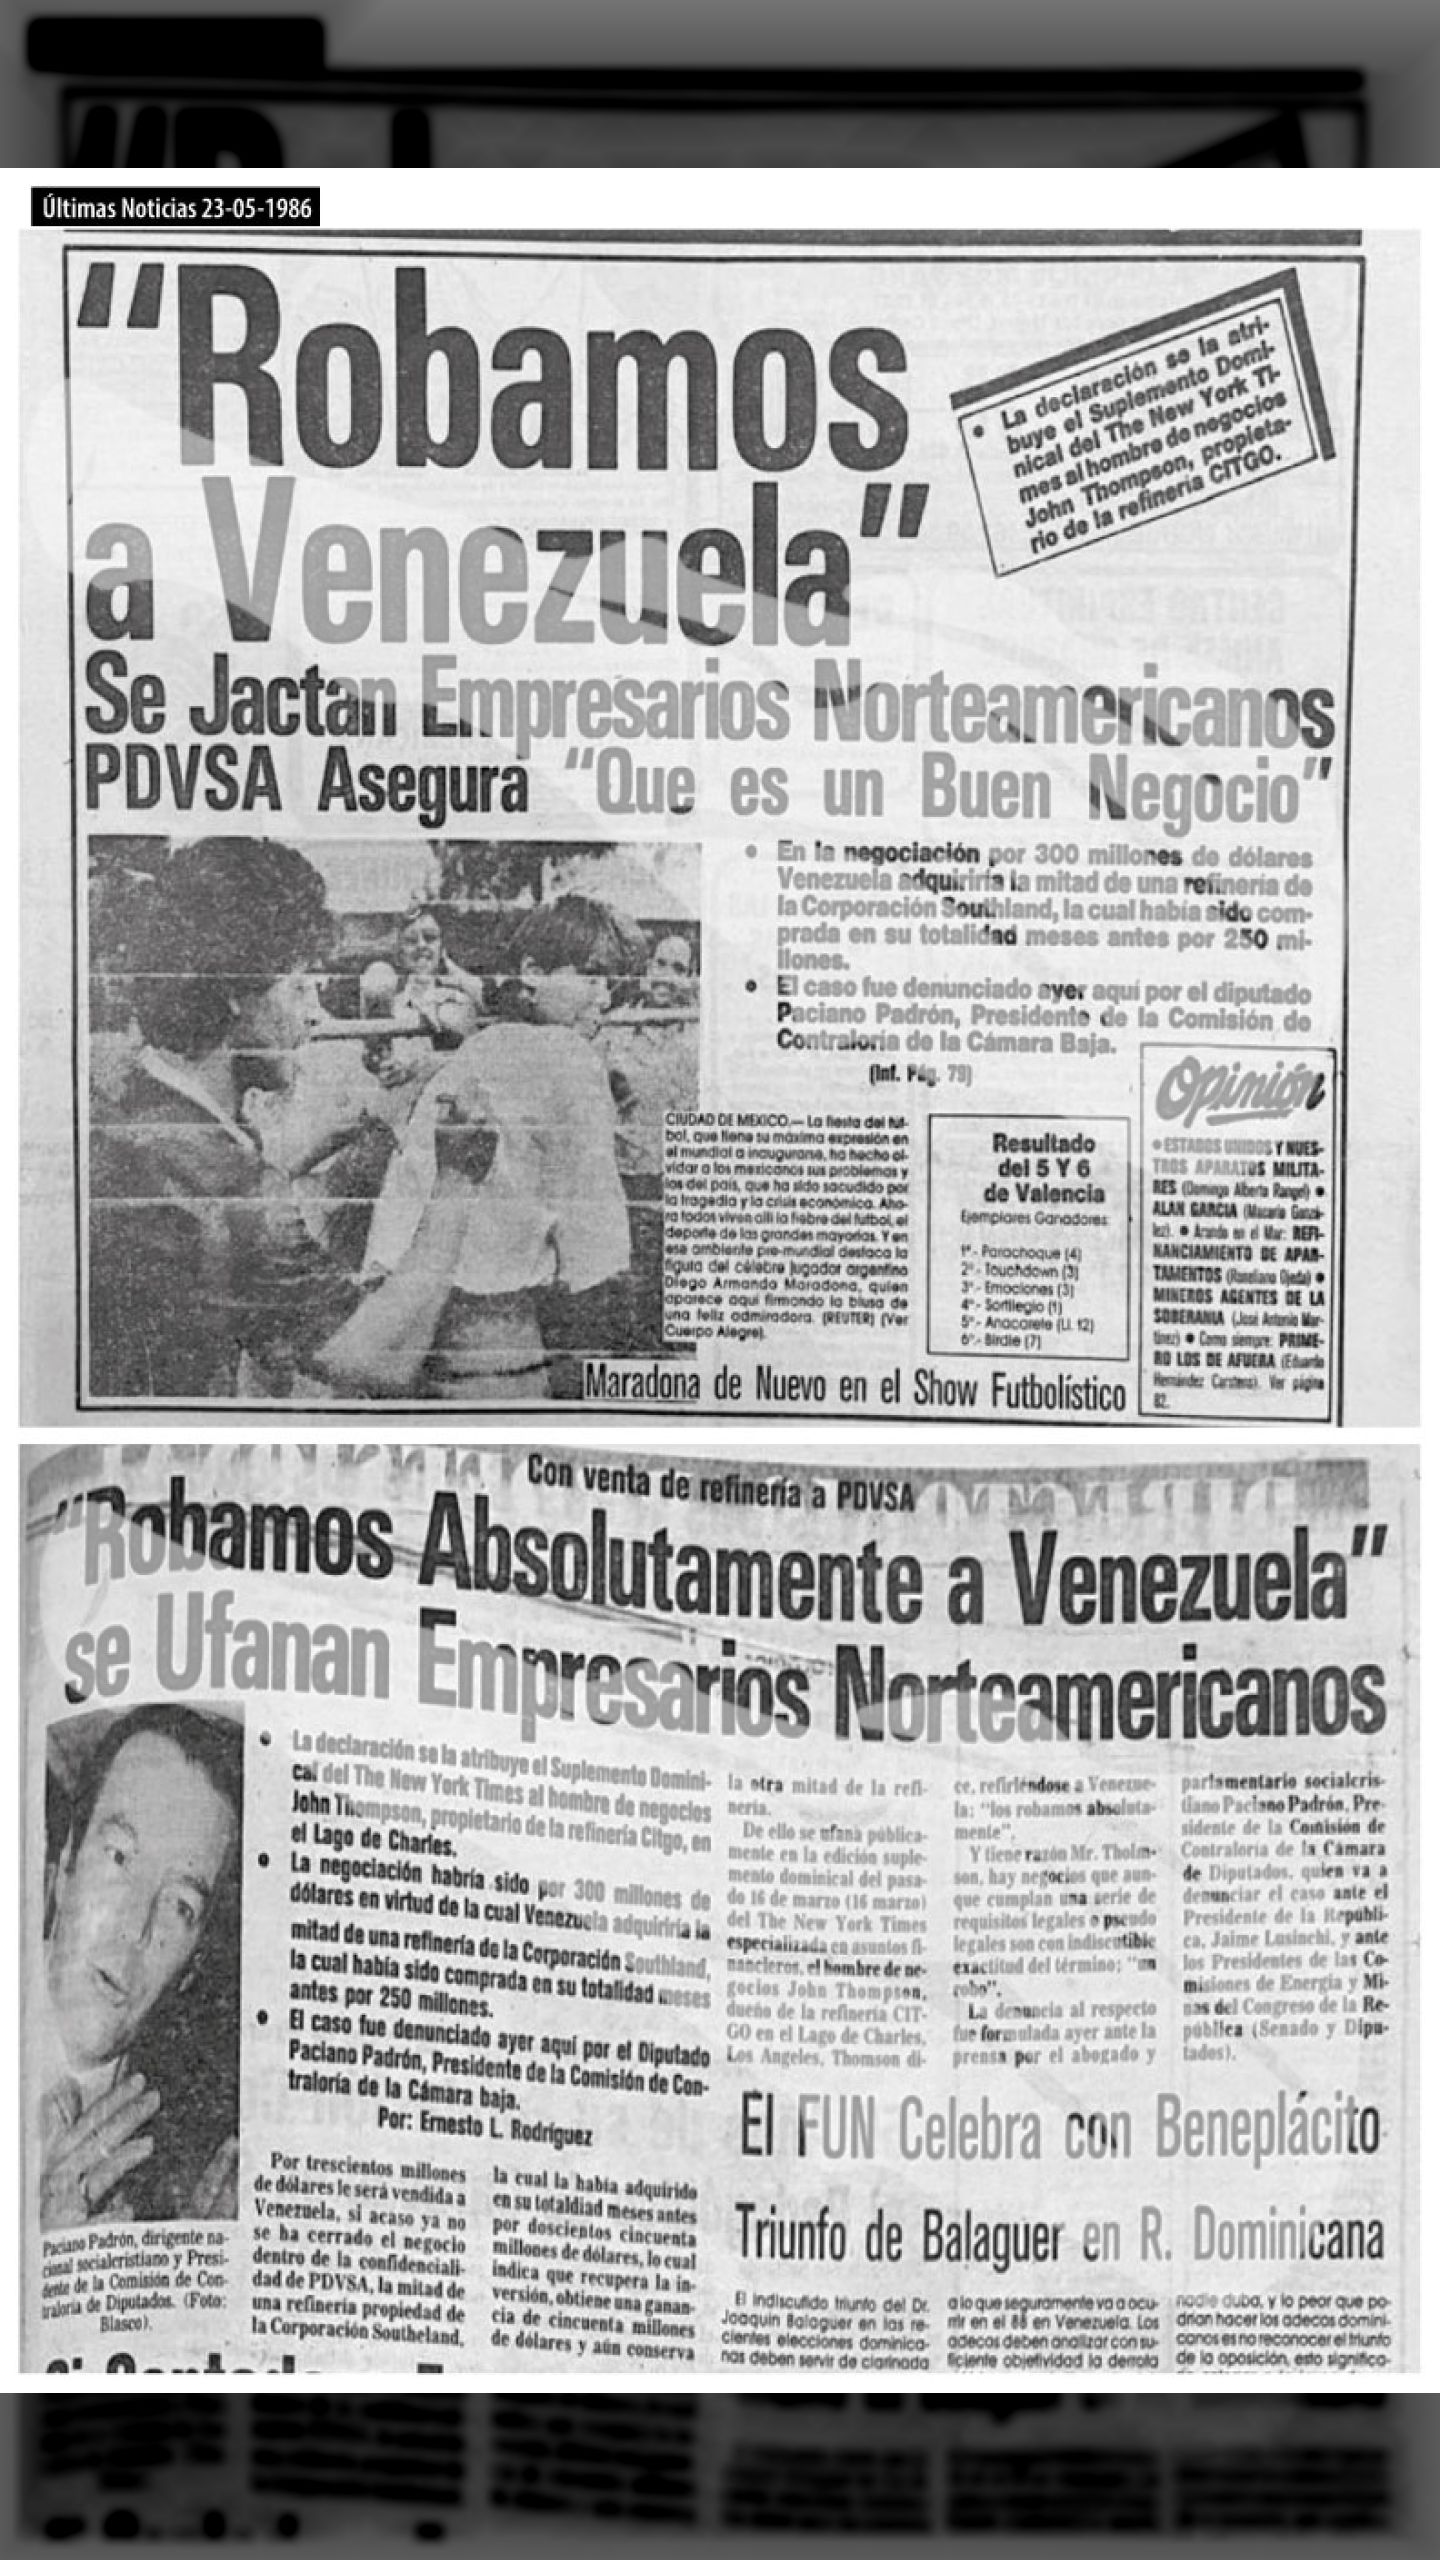 “Nosotros Robamos a Venezuela”, …confiesan empresarios norteamericanos (Últimas Noticias, 23 de mayo 1986)